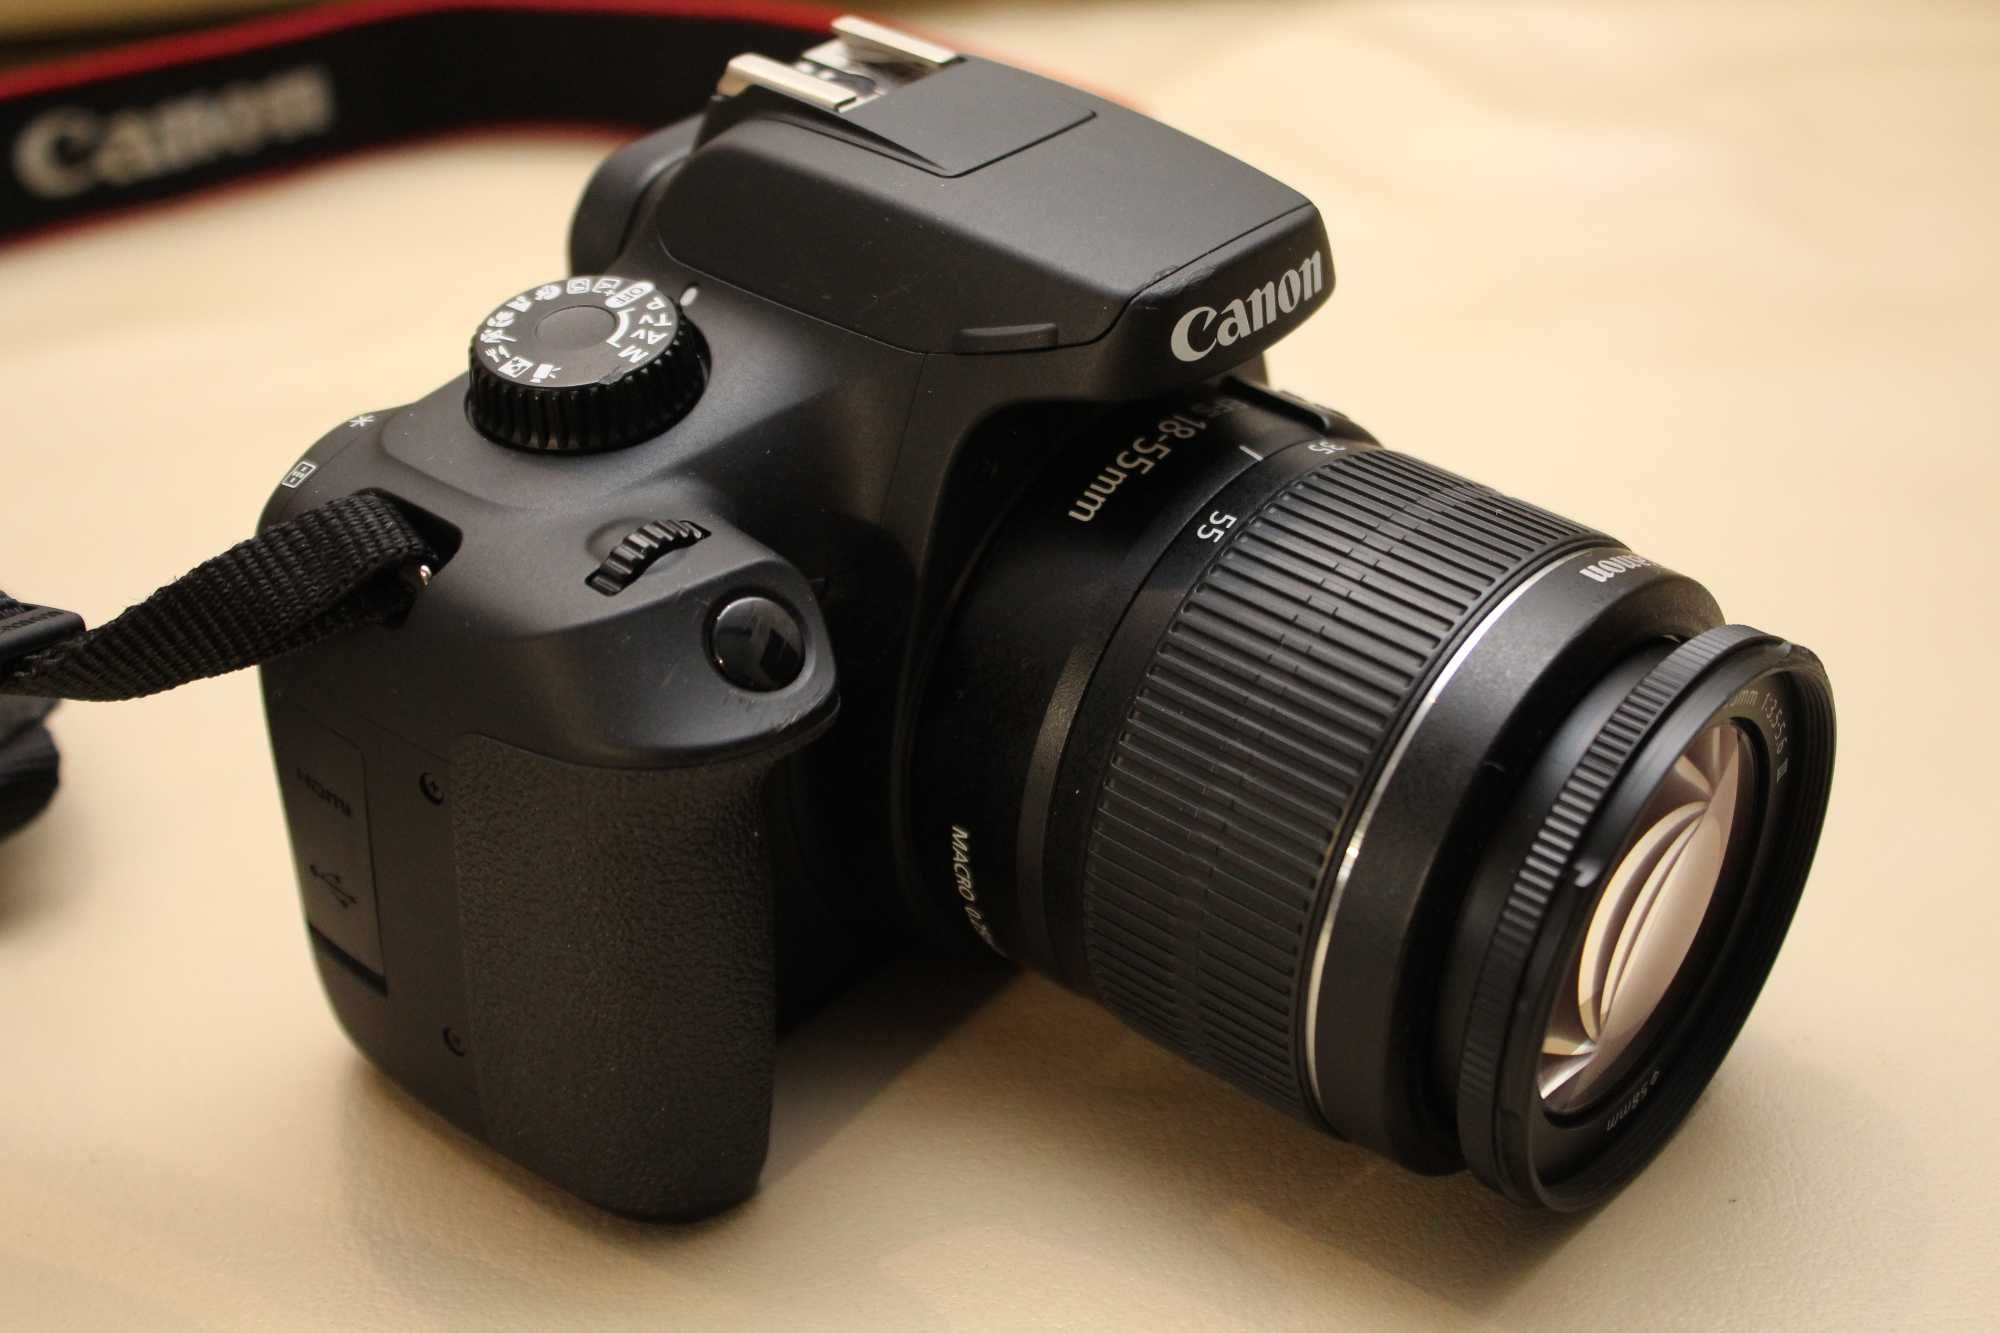 Aparat lustrzanka Canon EOS 4000d + obiektyw 18-55